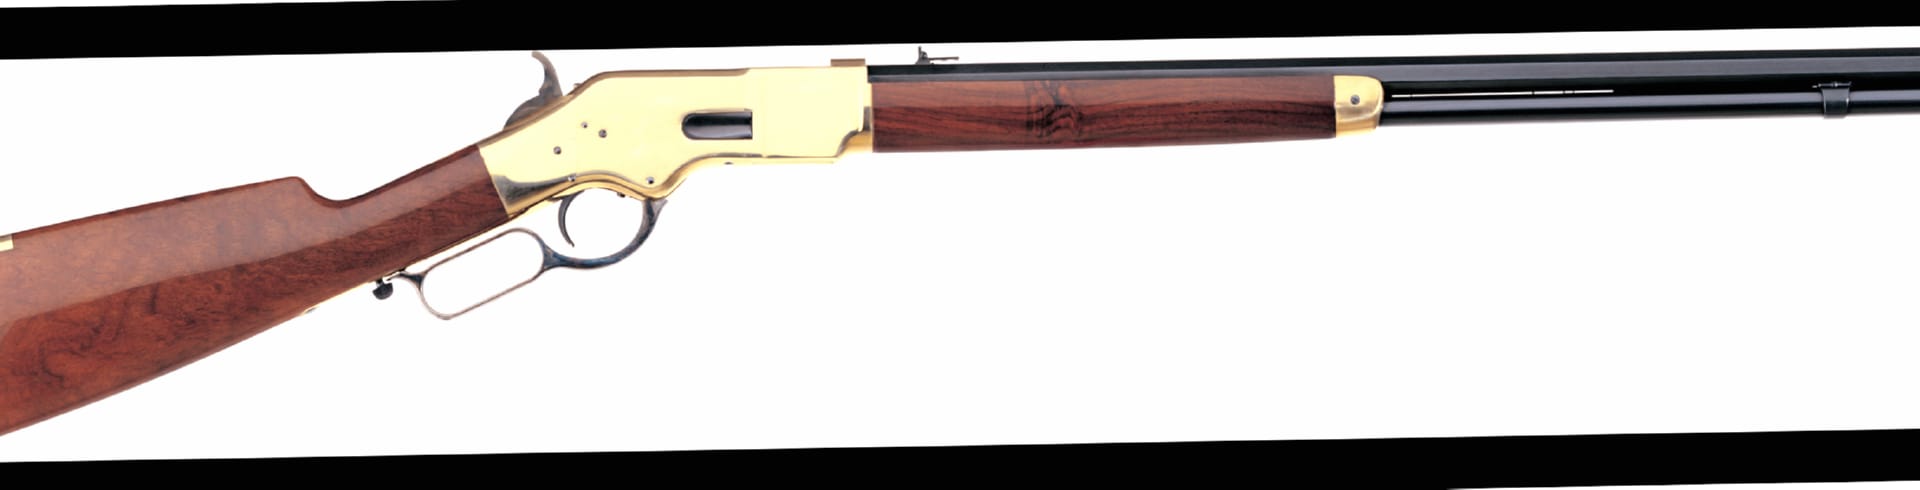 Uberti 1866 Yellowboy Rifle at 1600 x 1200 size wallpapers HD quality